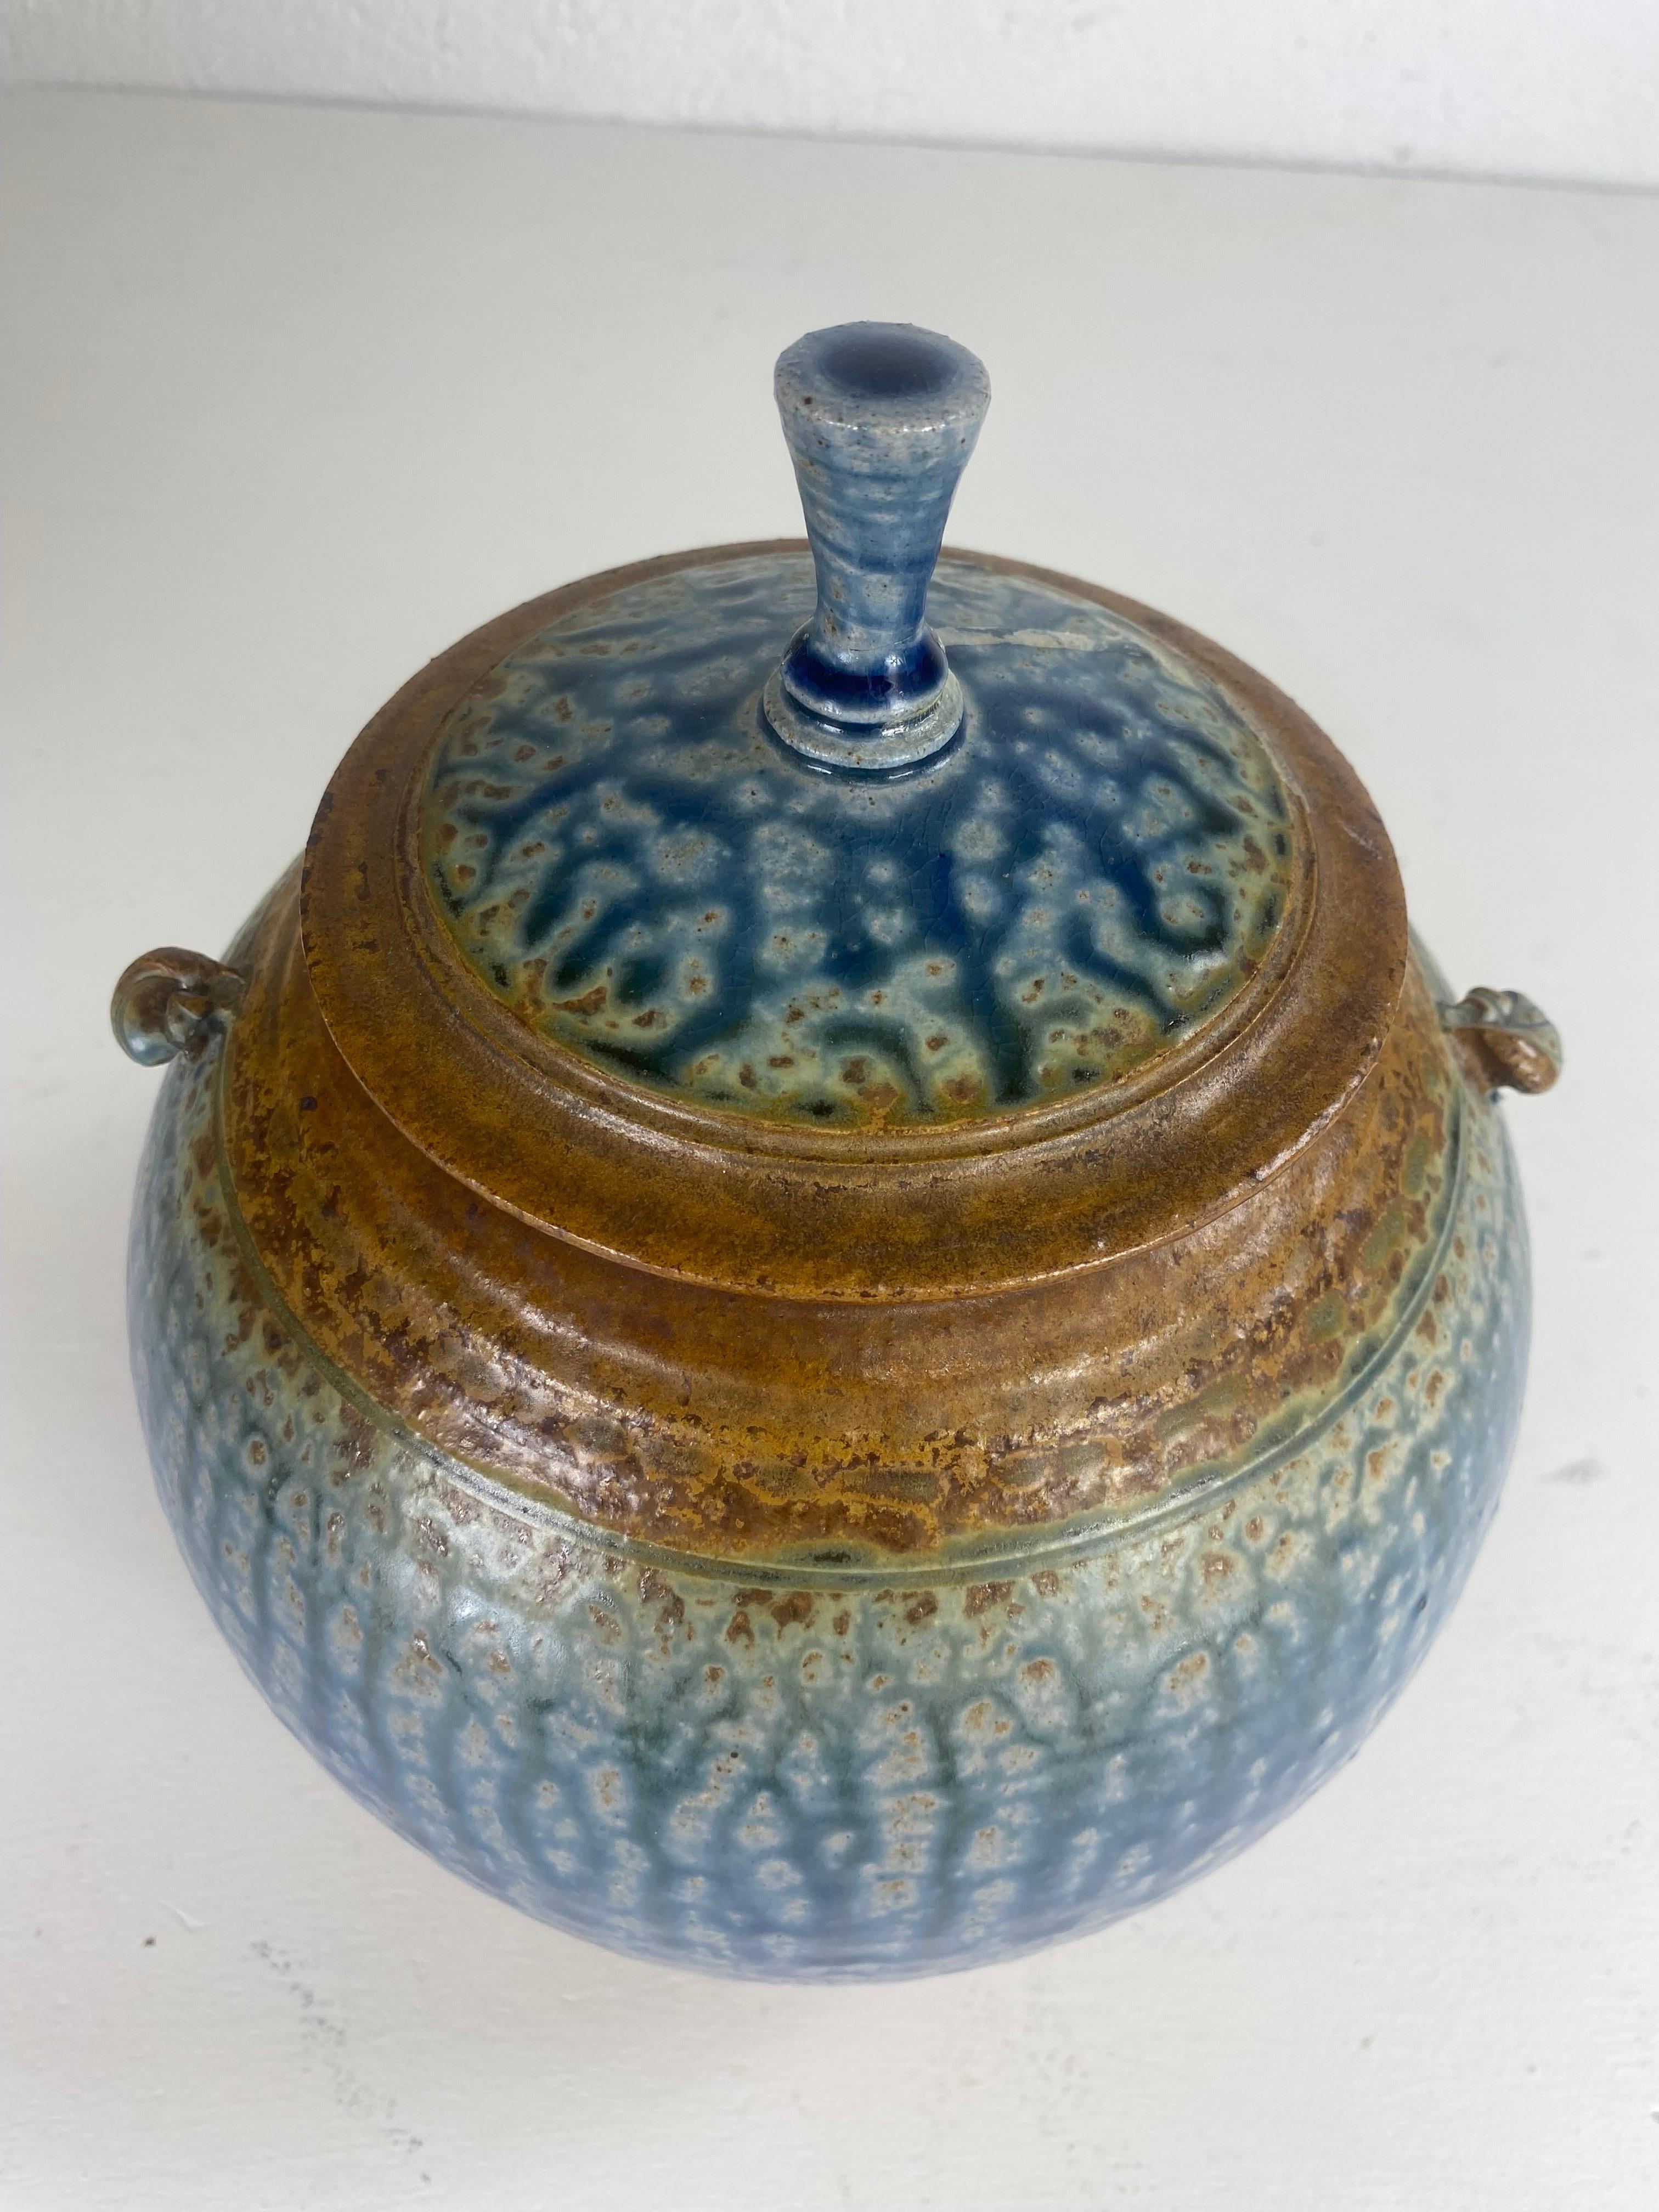 Il s'agit d'un bol en poterie artisanale vintage du milieu du siècle avec couvercle. Cette poterie artisanale présente un glaçage bleu œuf de robin et marron unique et distinctif, avec une finition antique à l'extérieur. Le bol est muni de deux